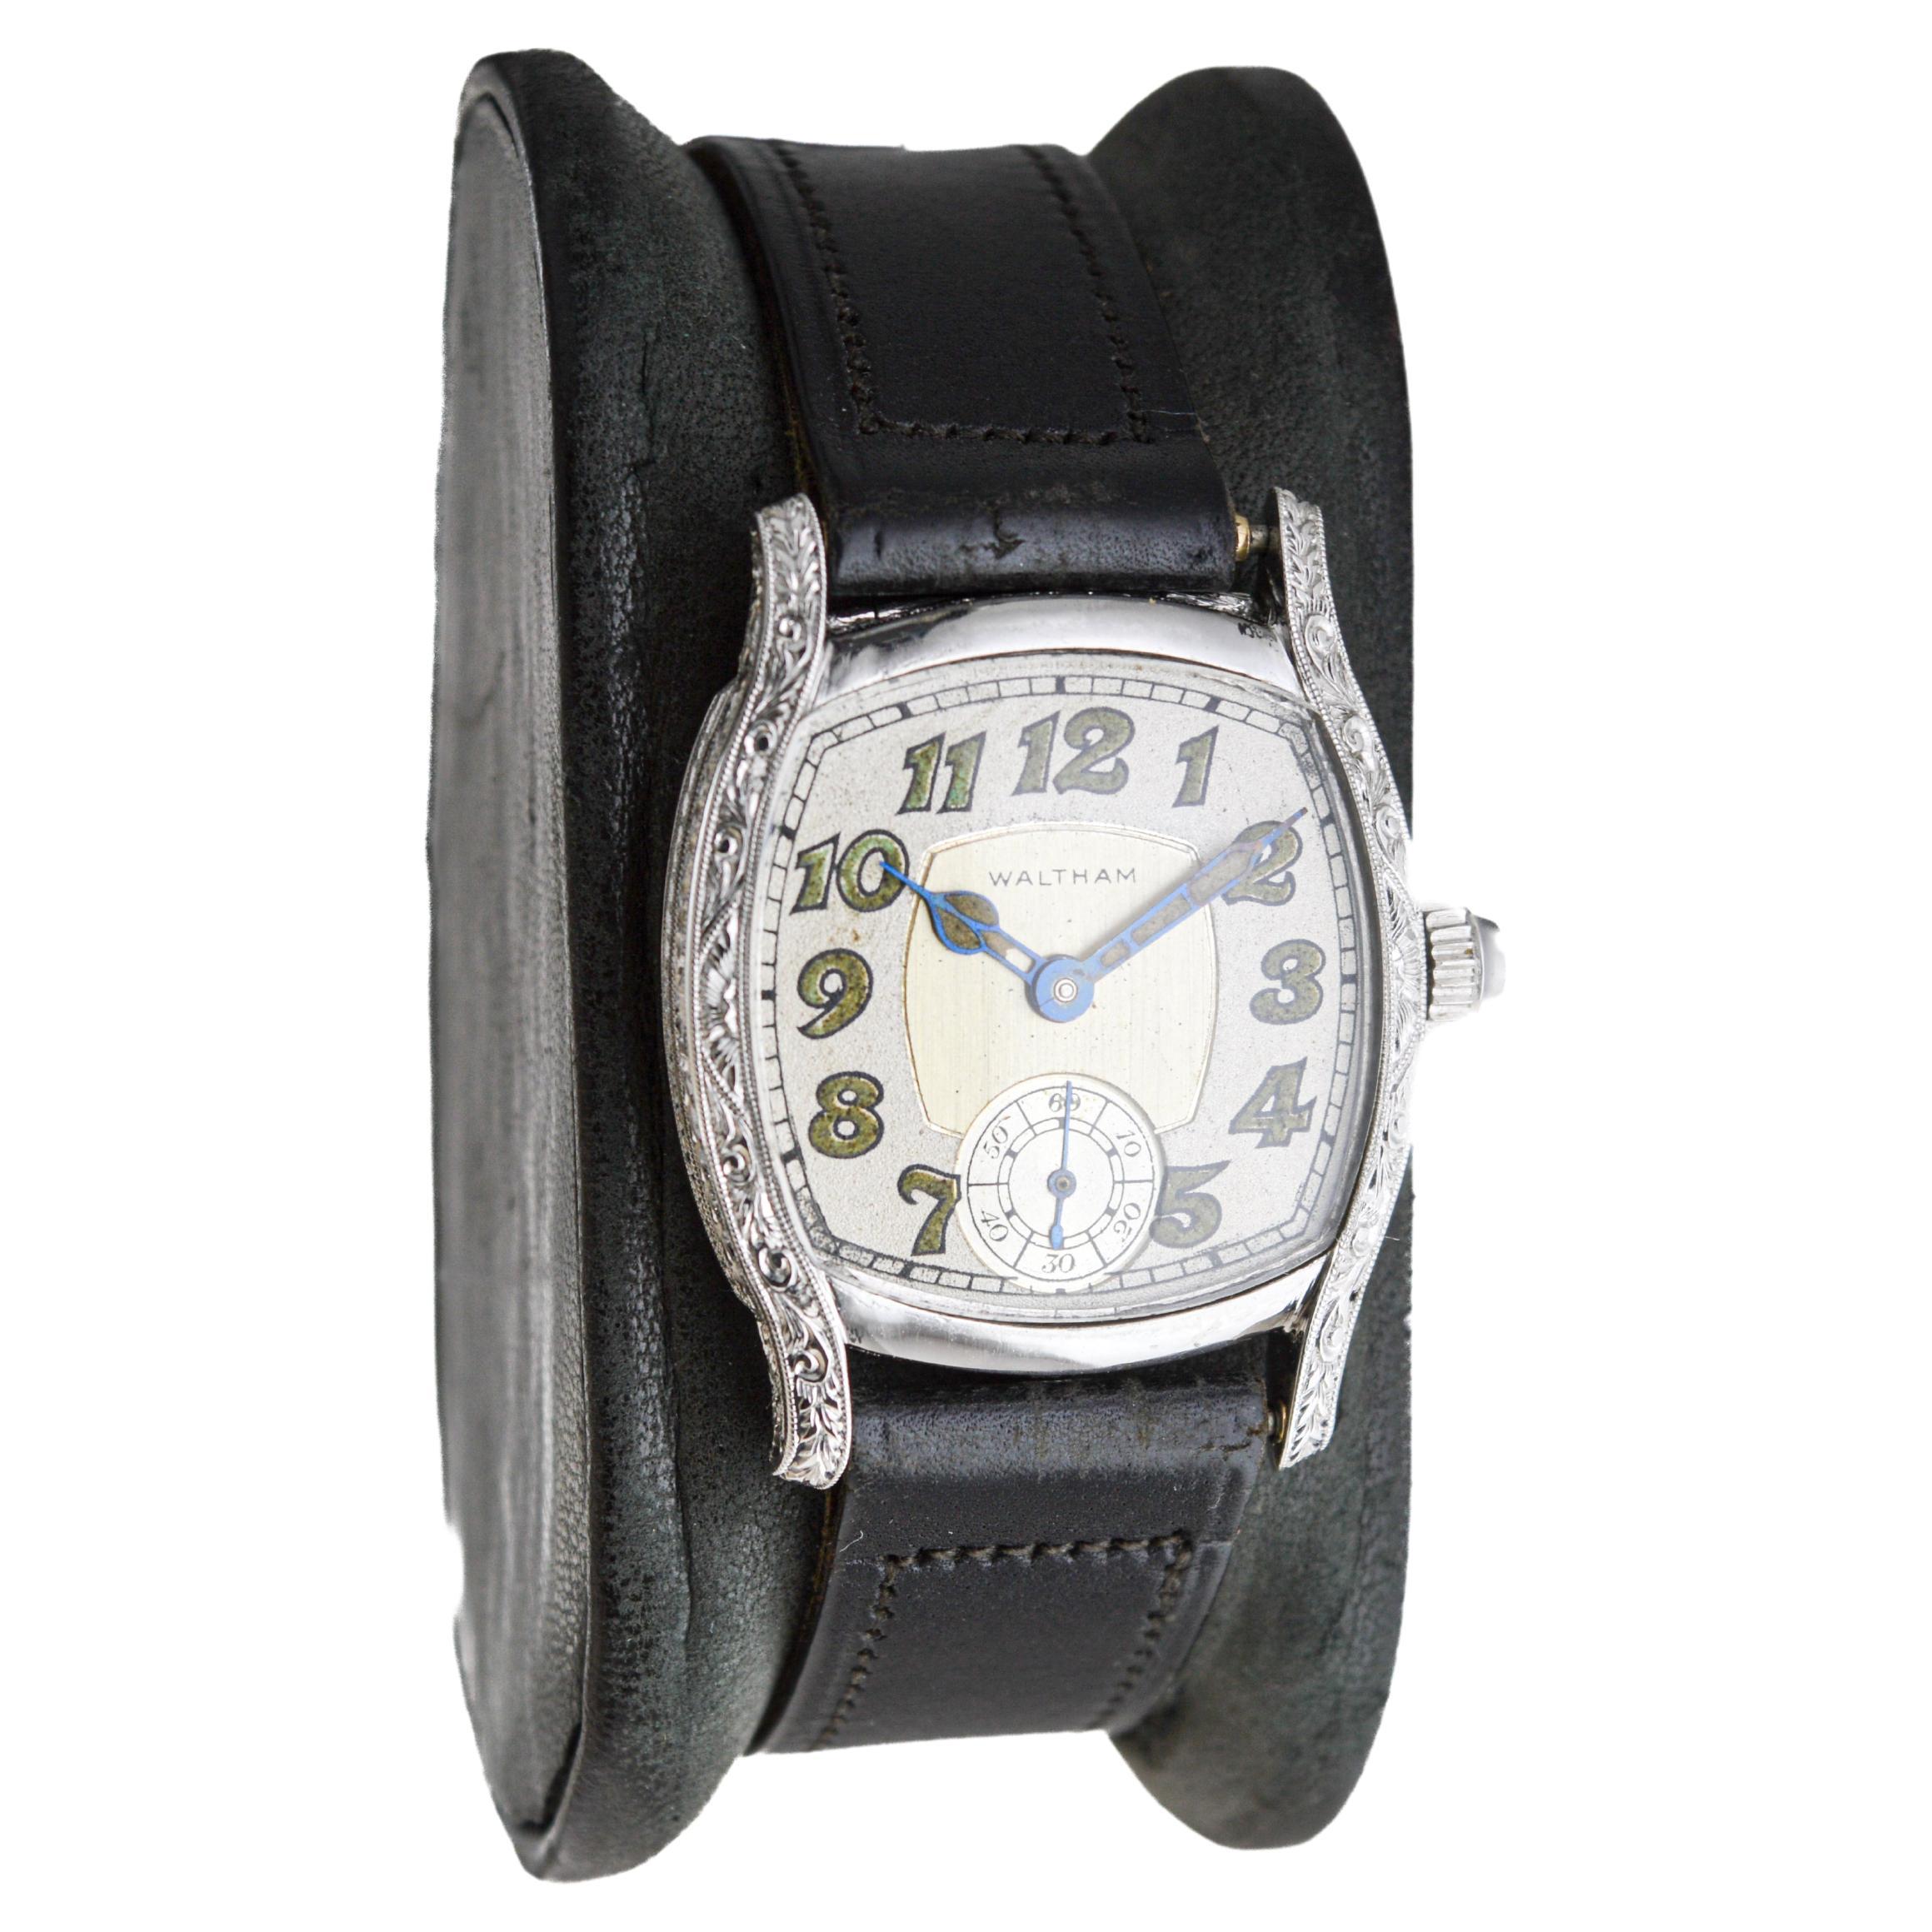 FABRIK / HAUS: Waltham Watch Company
STIL / REFERENZ: Art Deco / Kissen Form
METALL / MATERIAL: Platin
CIRCA / JAHR: 1934
ABMESSUNGEN / GRÖSSE: Länge 27mm X Breite 35mm
UHRWERK / KALIBER: Handaufzug / 21 Jewels / Kaliber 6/0
ZIFFERBLATT / ZEIGER: